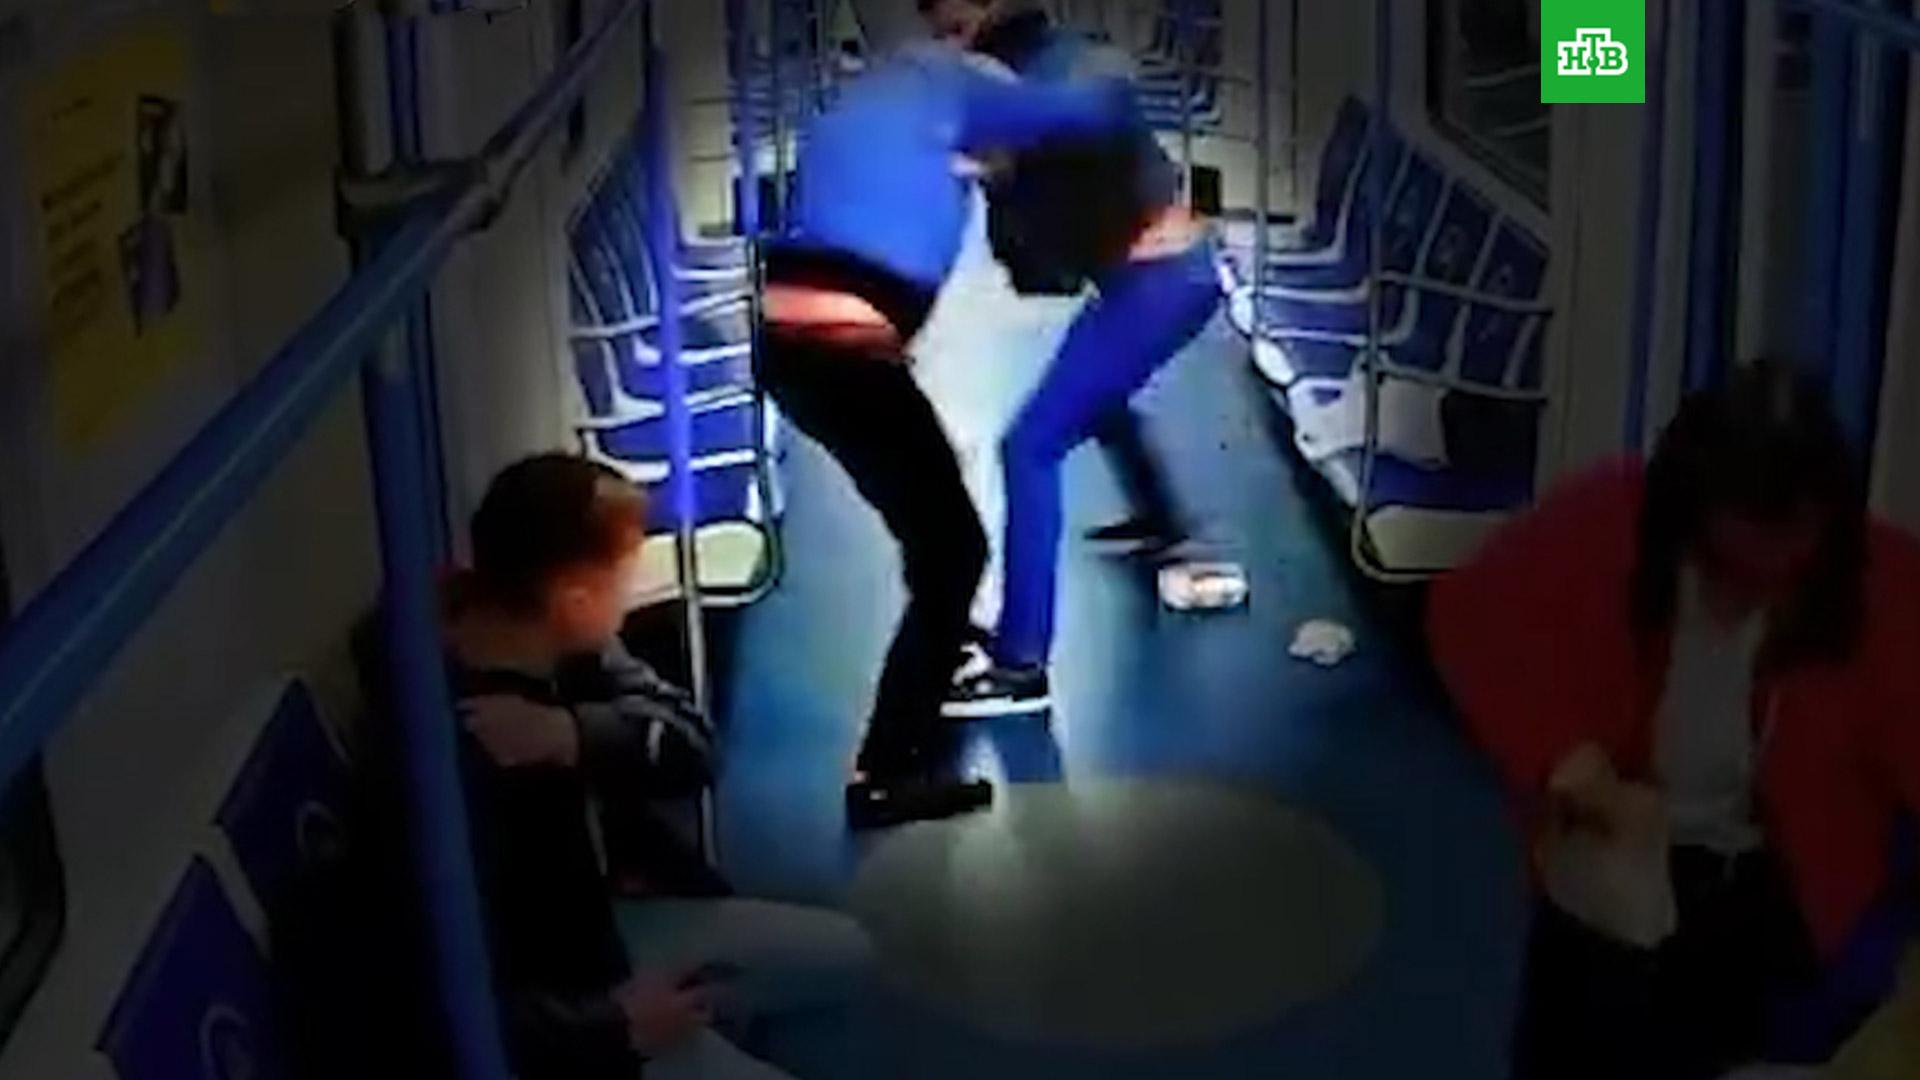 фото избивших мужчину в метро